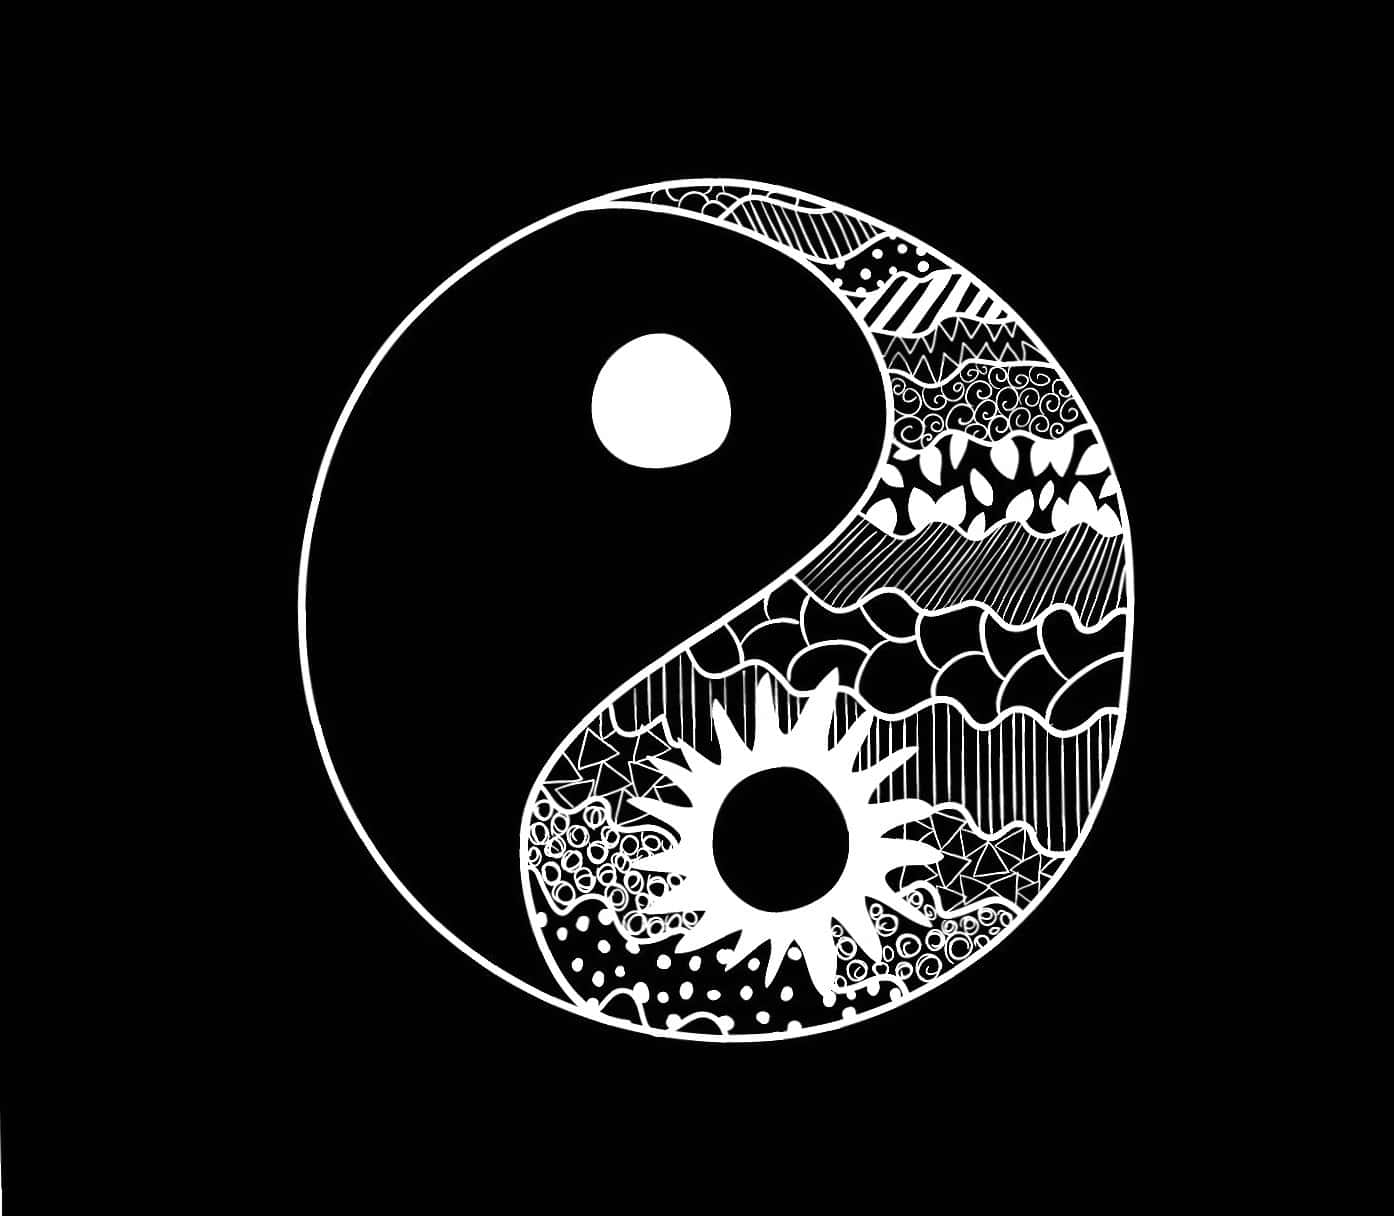 Unsímbolo De Yin Yang Que Representa El Equilibrio Y La Coexistencia.